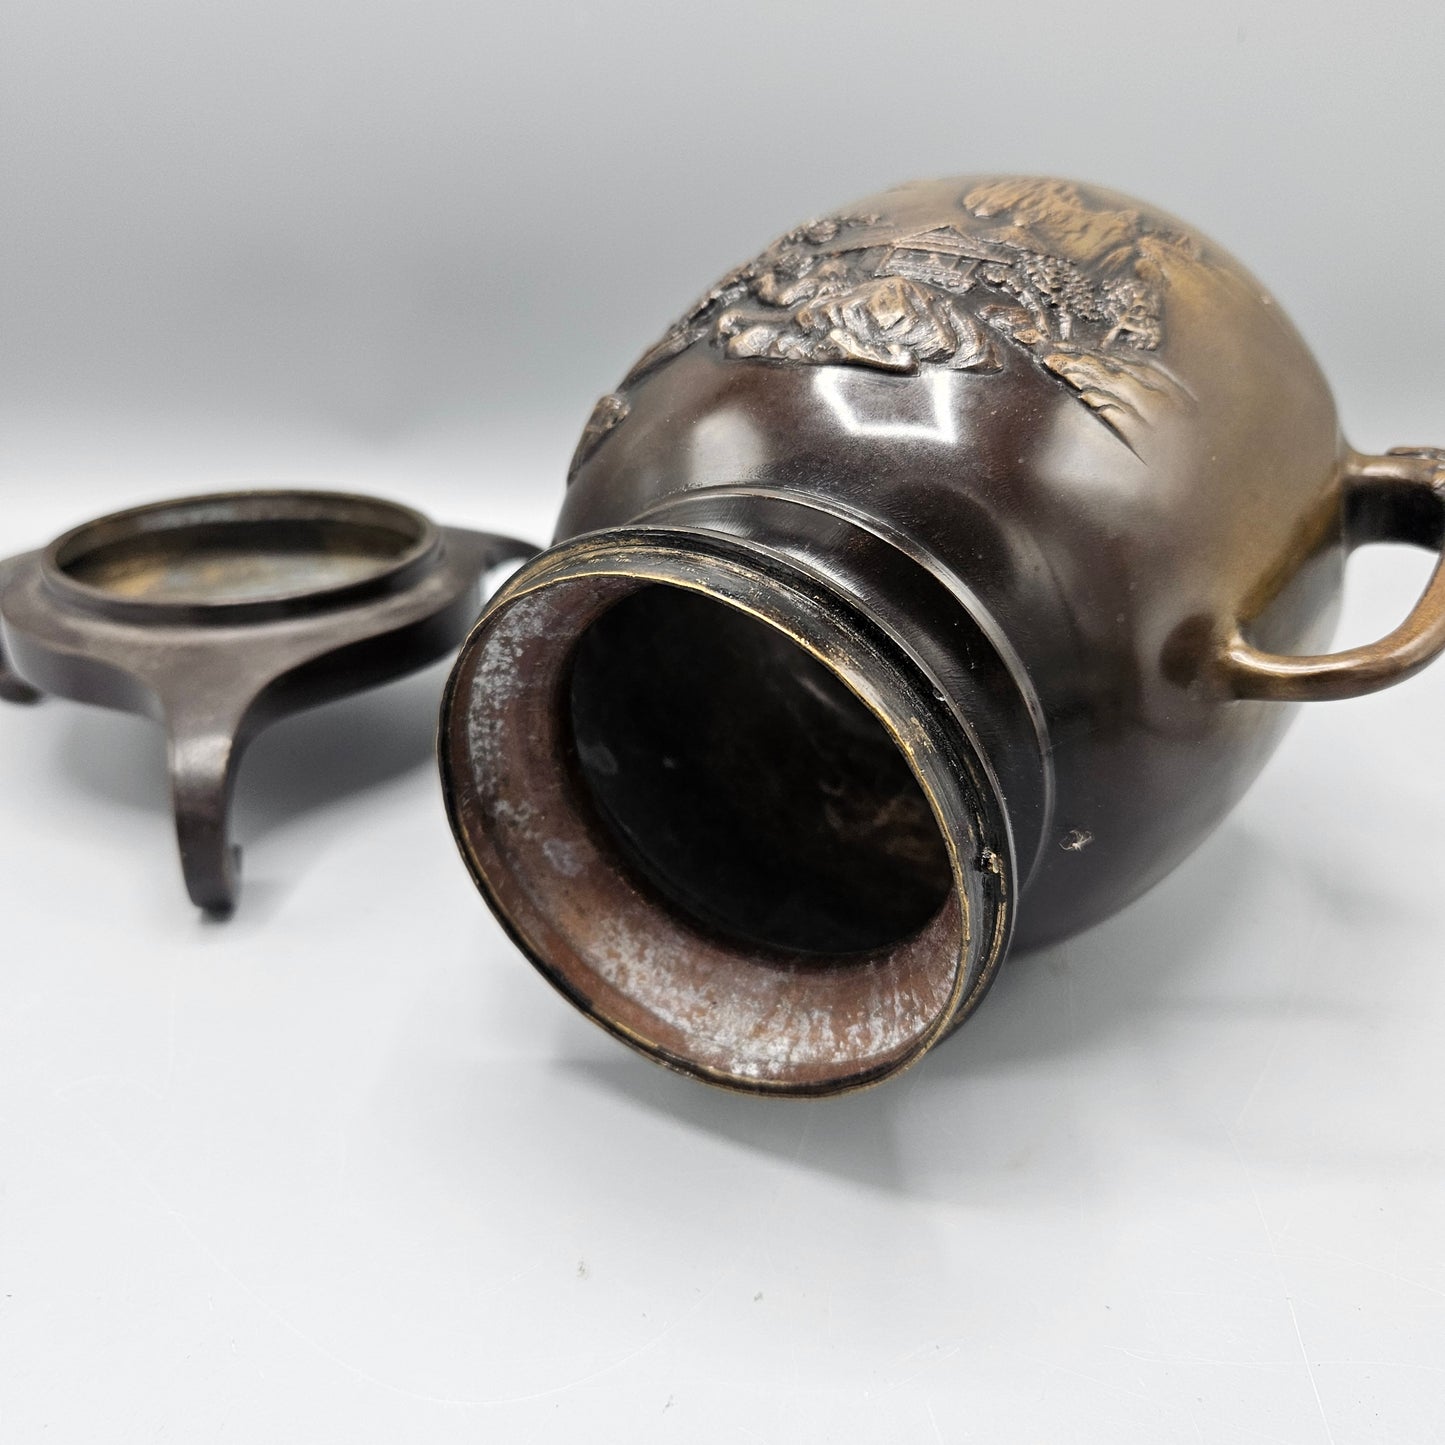 Chinese Bronze Urn-Form Incense Burner